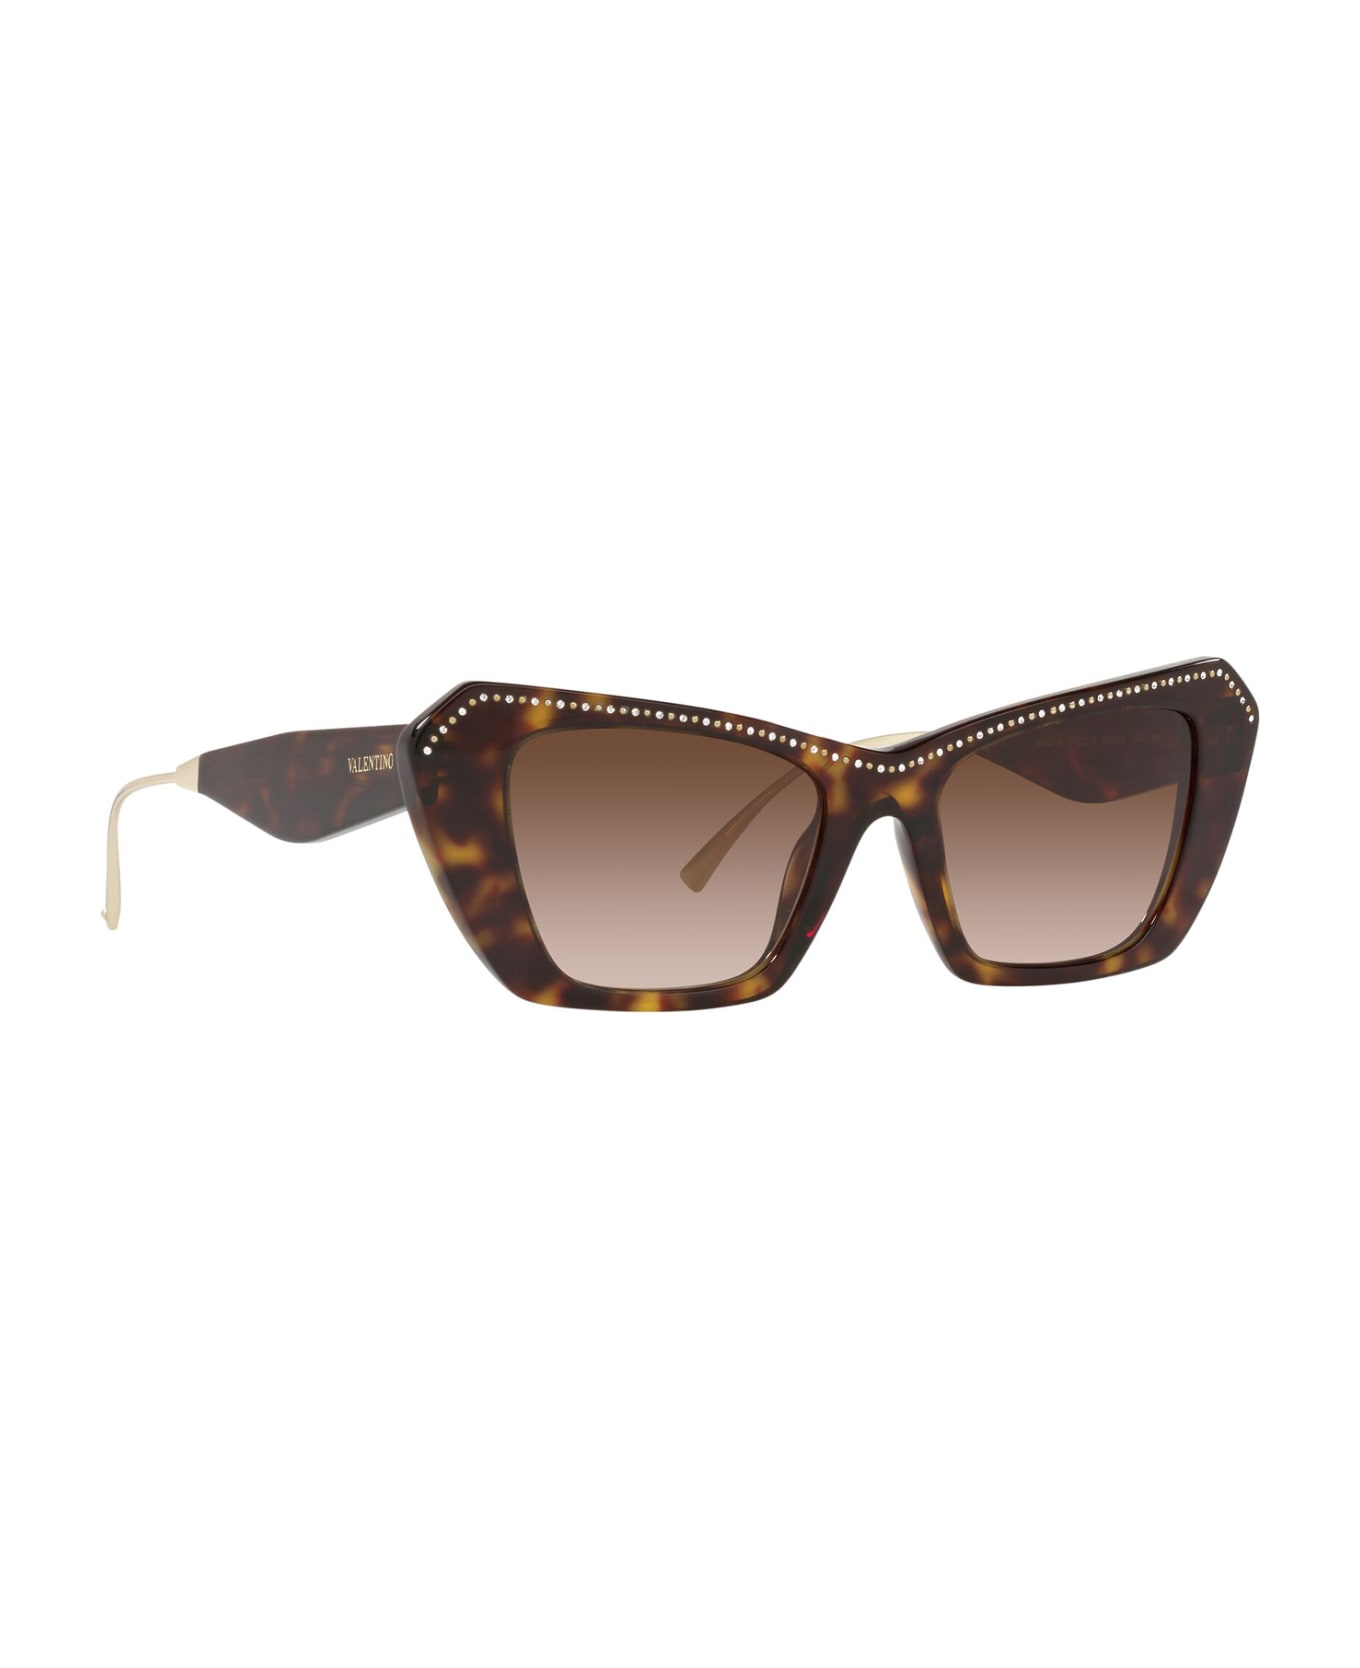 Valentino Eyewear Va4114 Havana Sunglasses - Havana サングラス